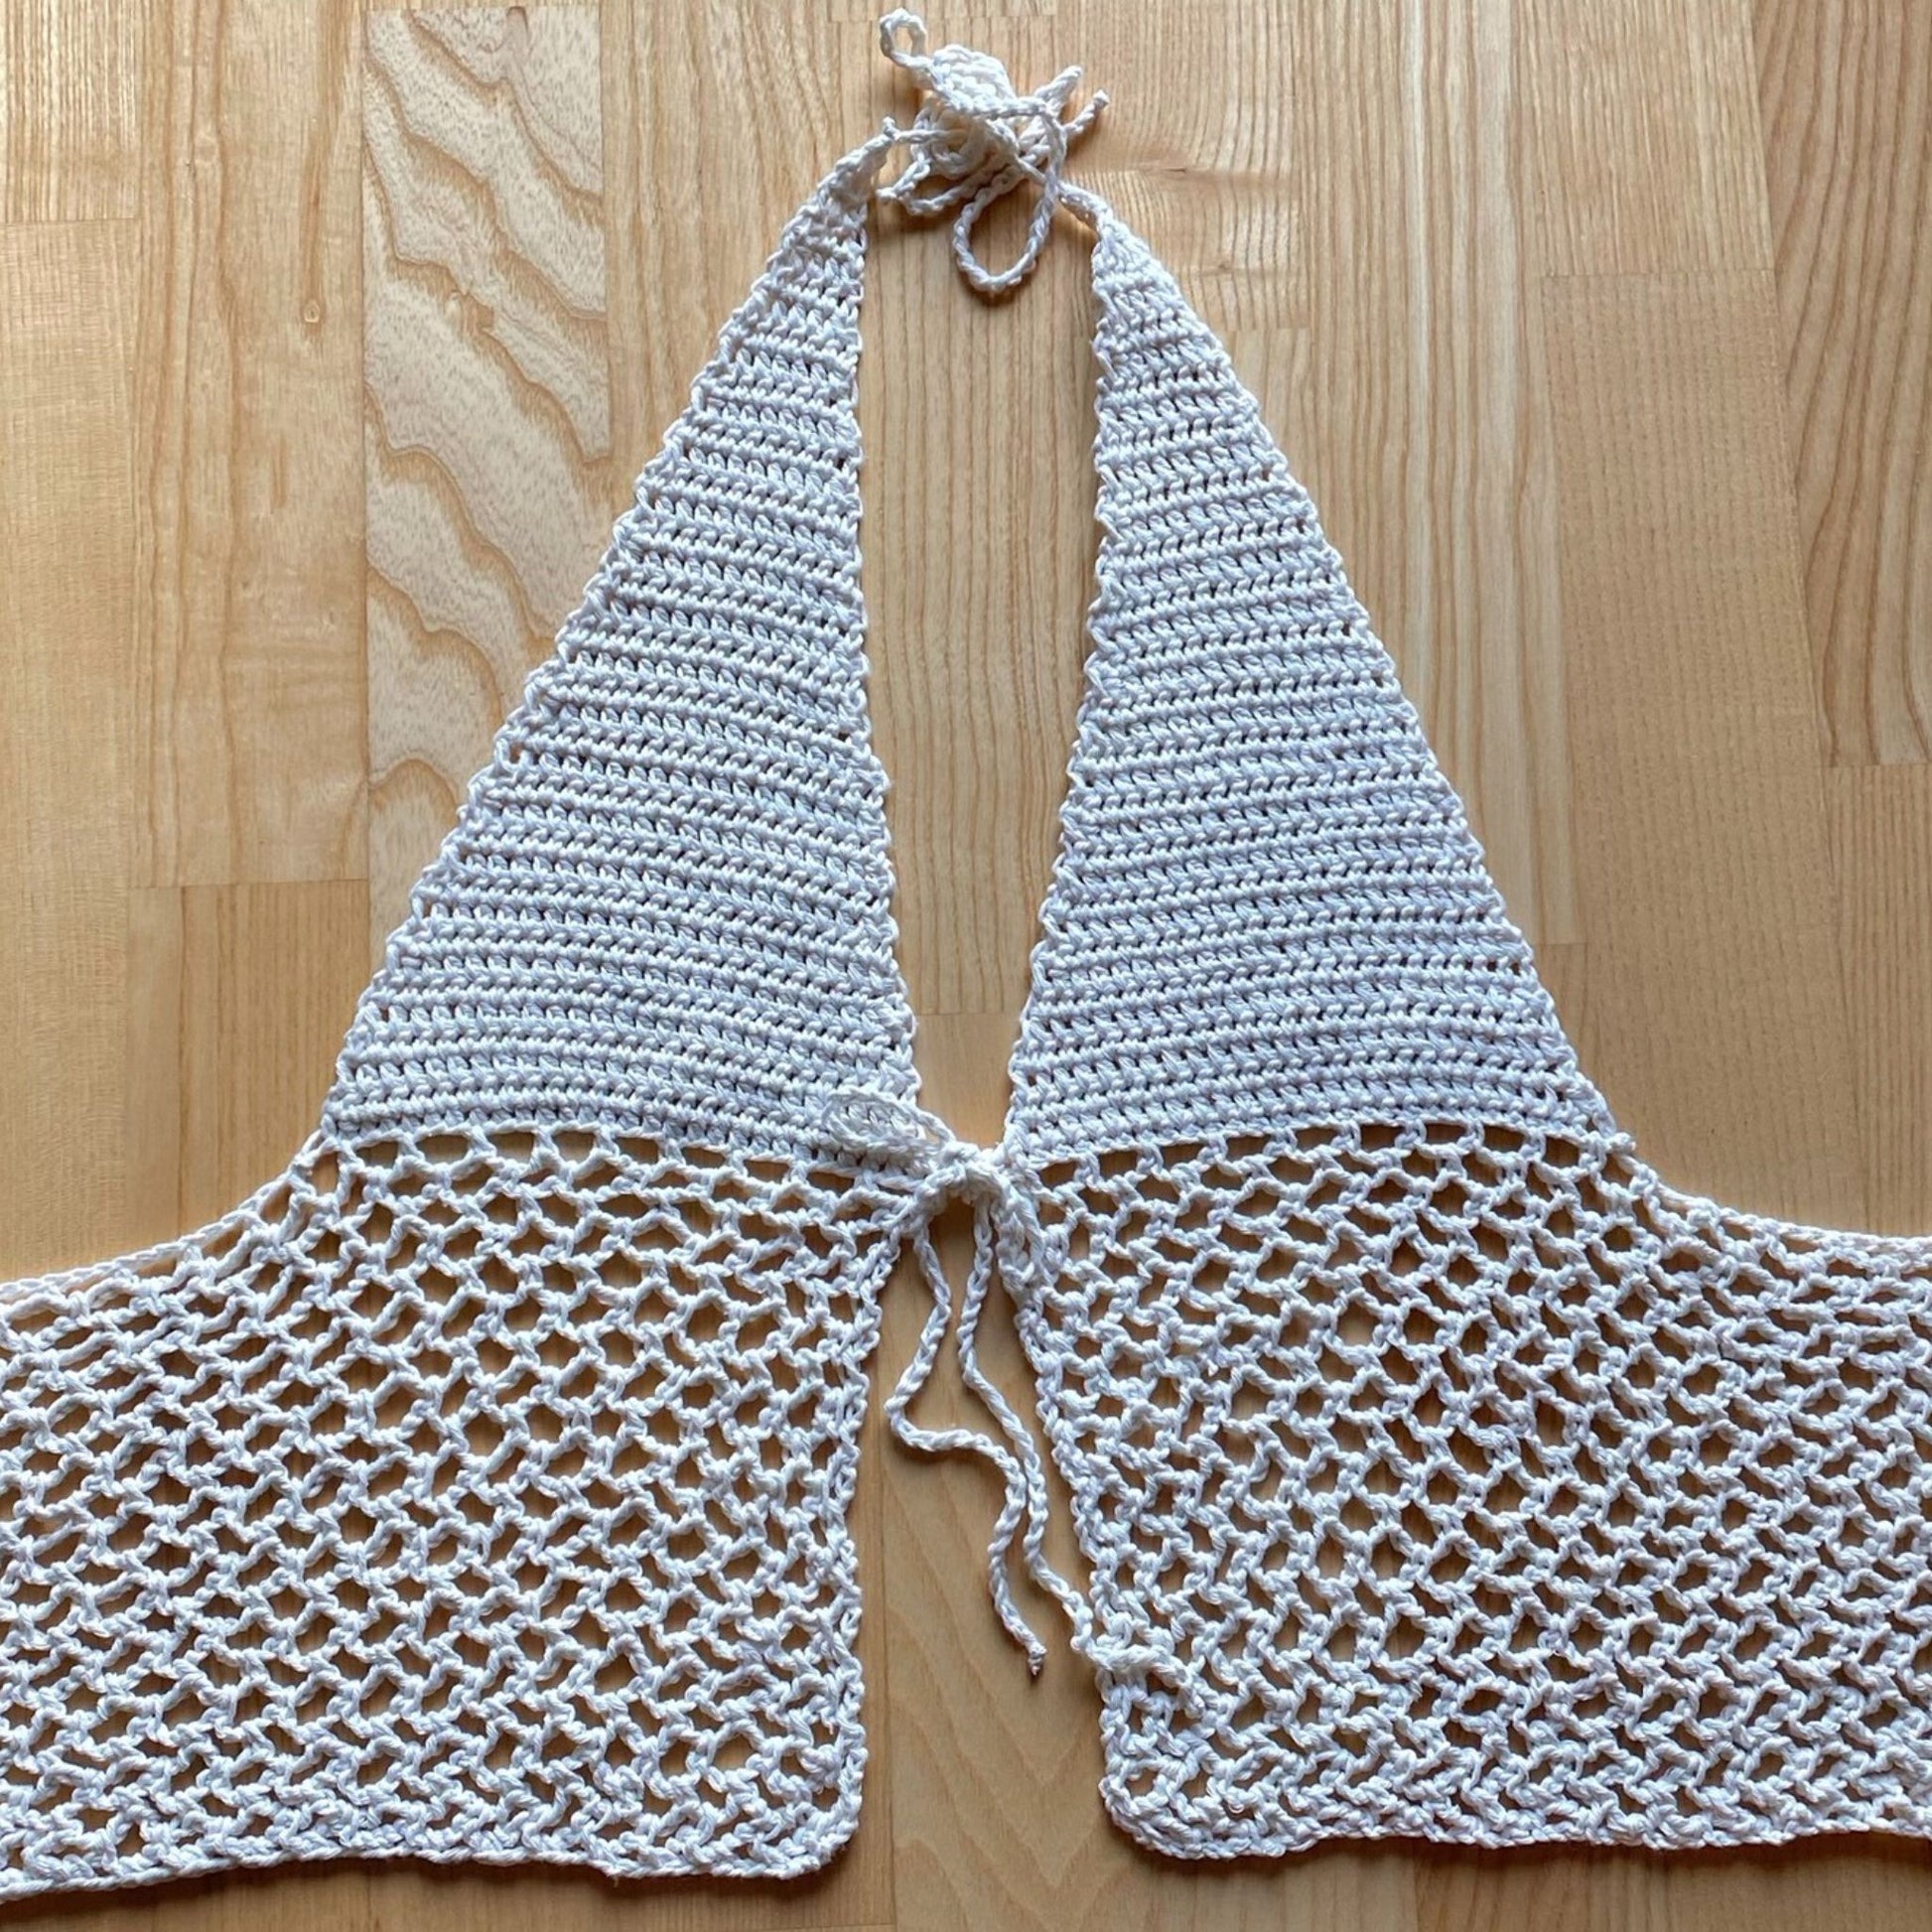 White crochet halter neck top displayed flat on wooden floor